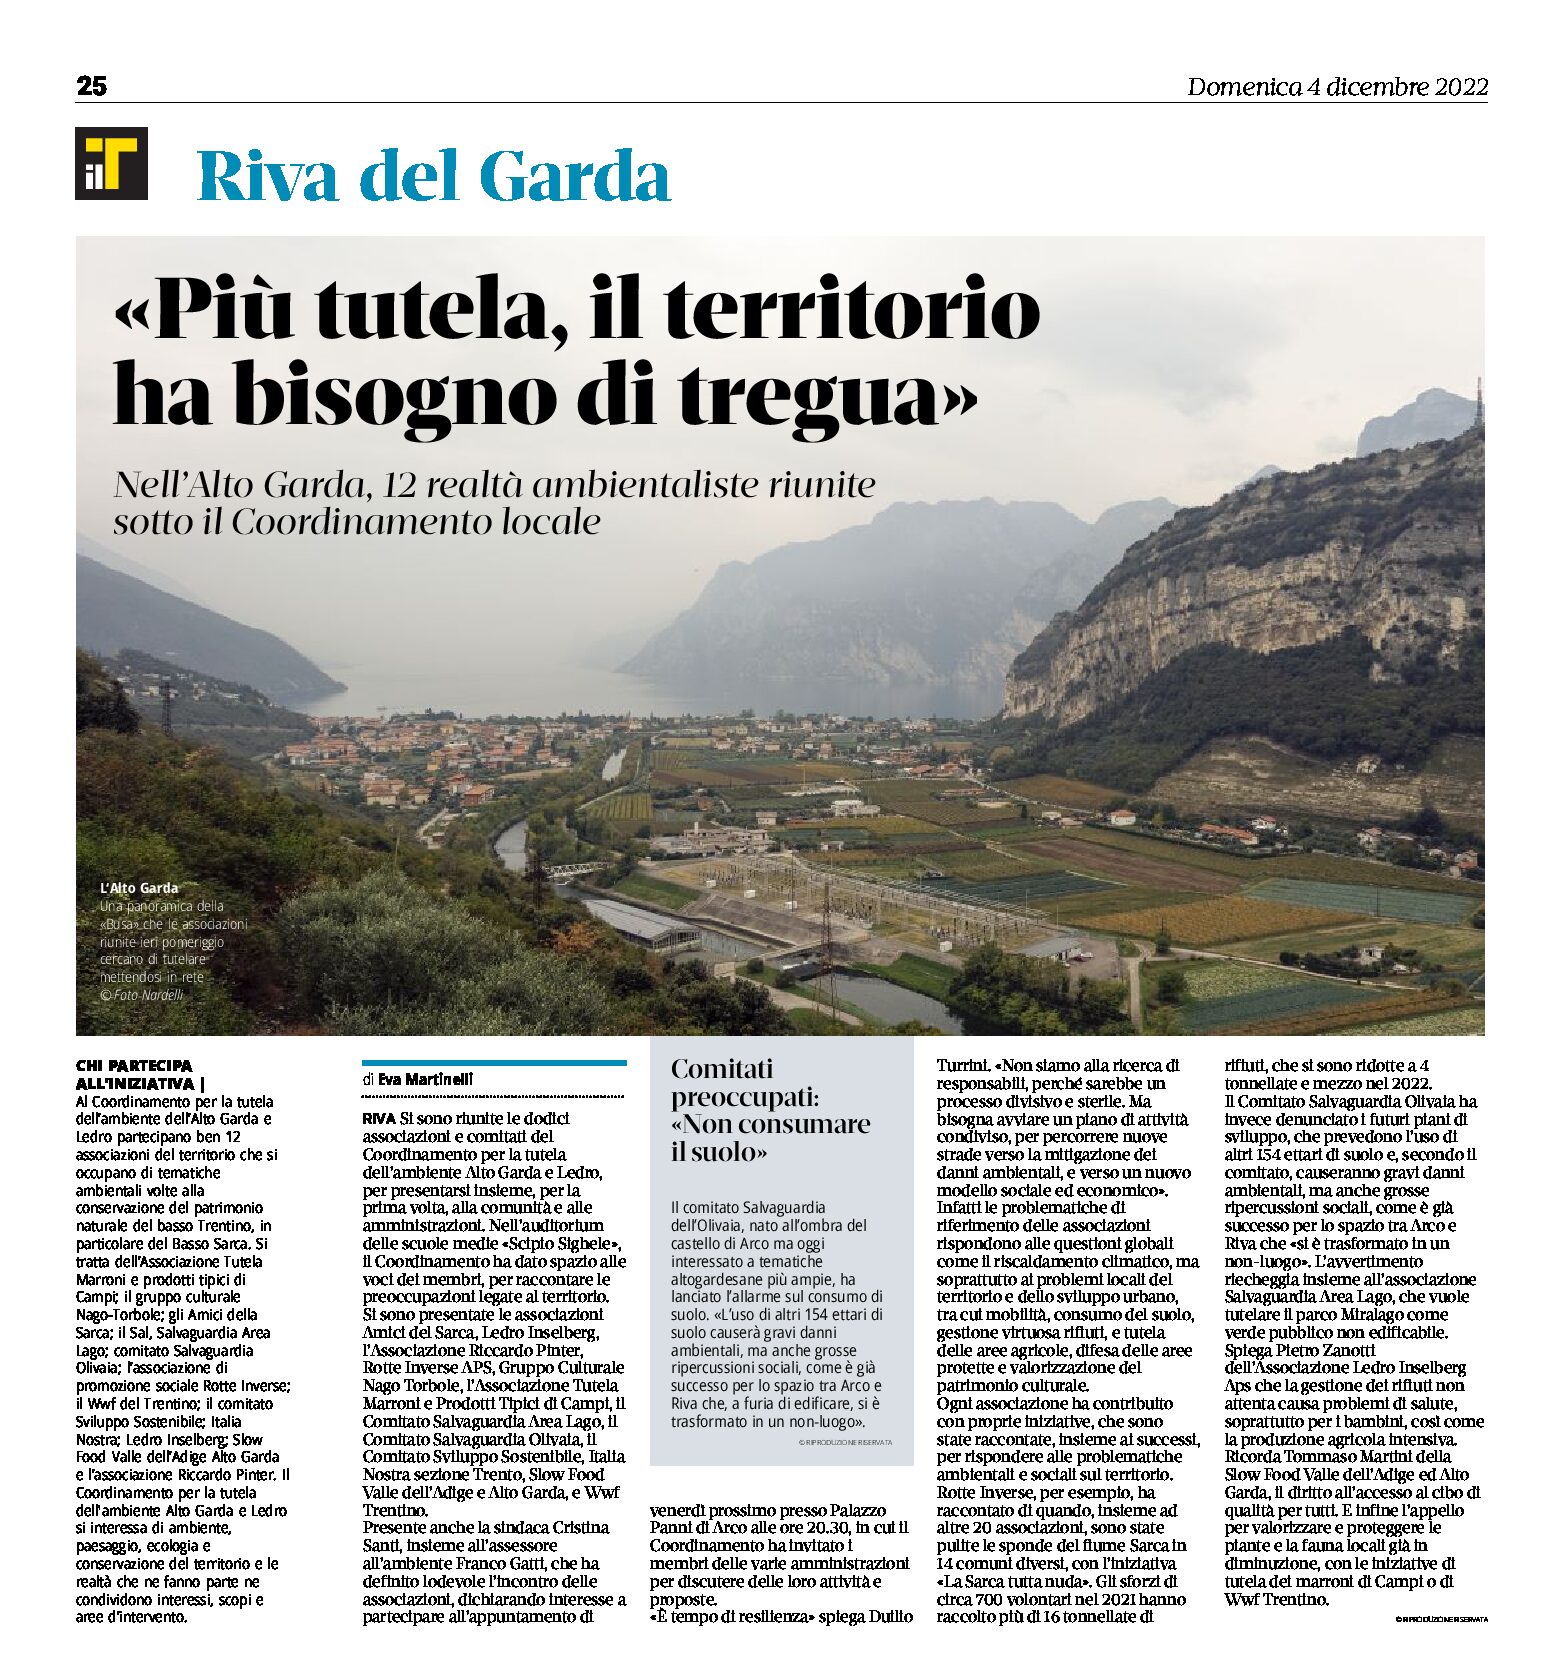 Riva, Alto Garda: “più tutela, il territorio ha bisogno di tregua”, 12 realtà ambientaliste riunite sotto il Coordinamento locale